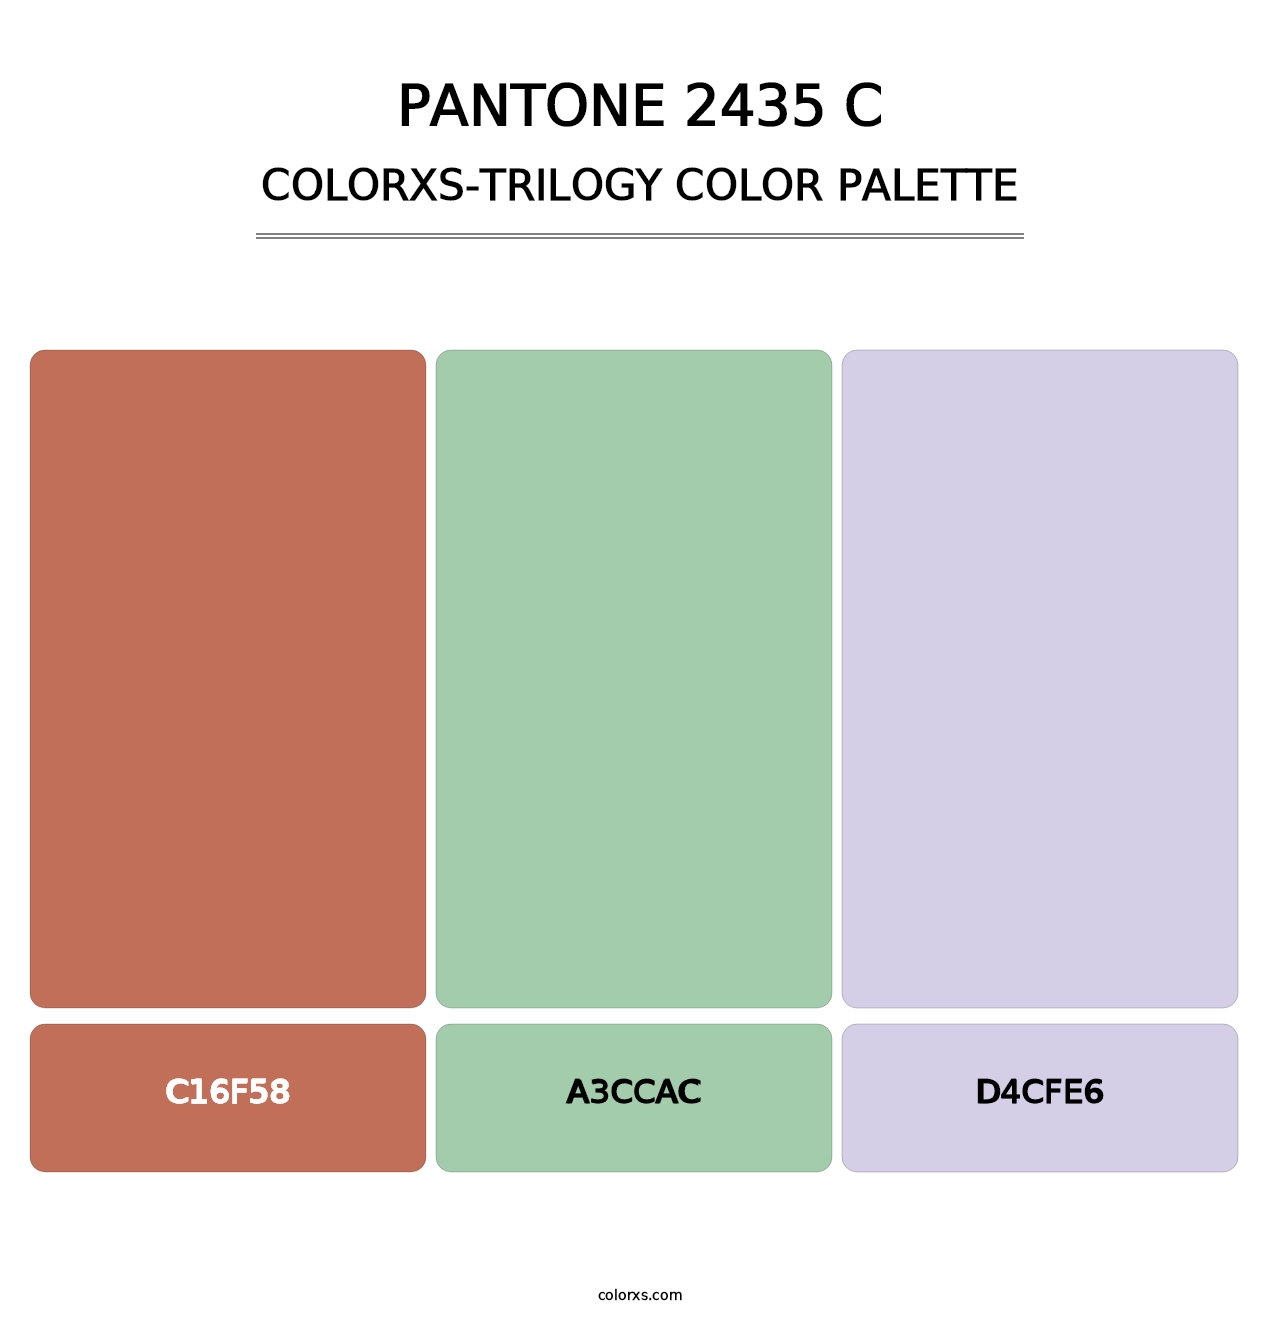 PANTONE 2435 C - Colorxs Trilogy Palette